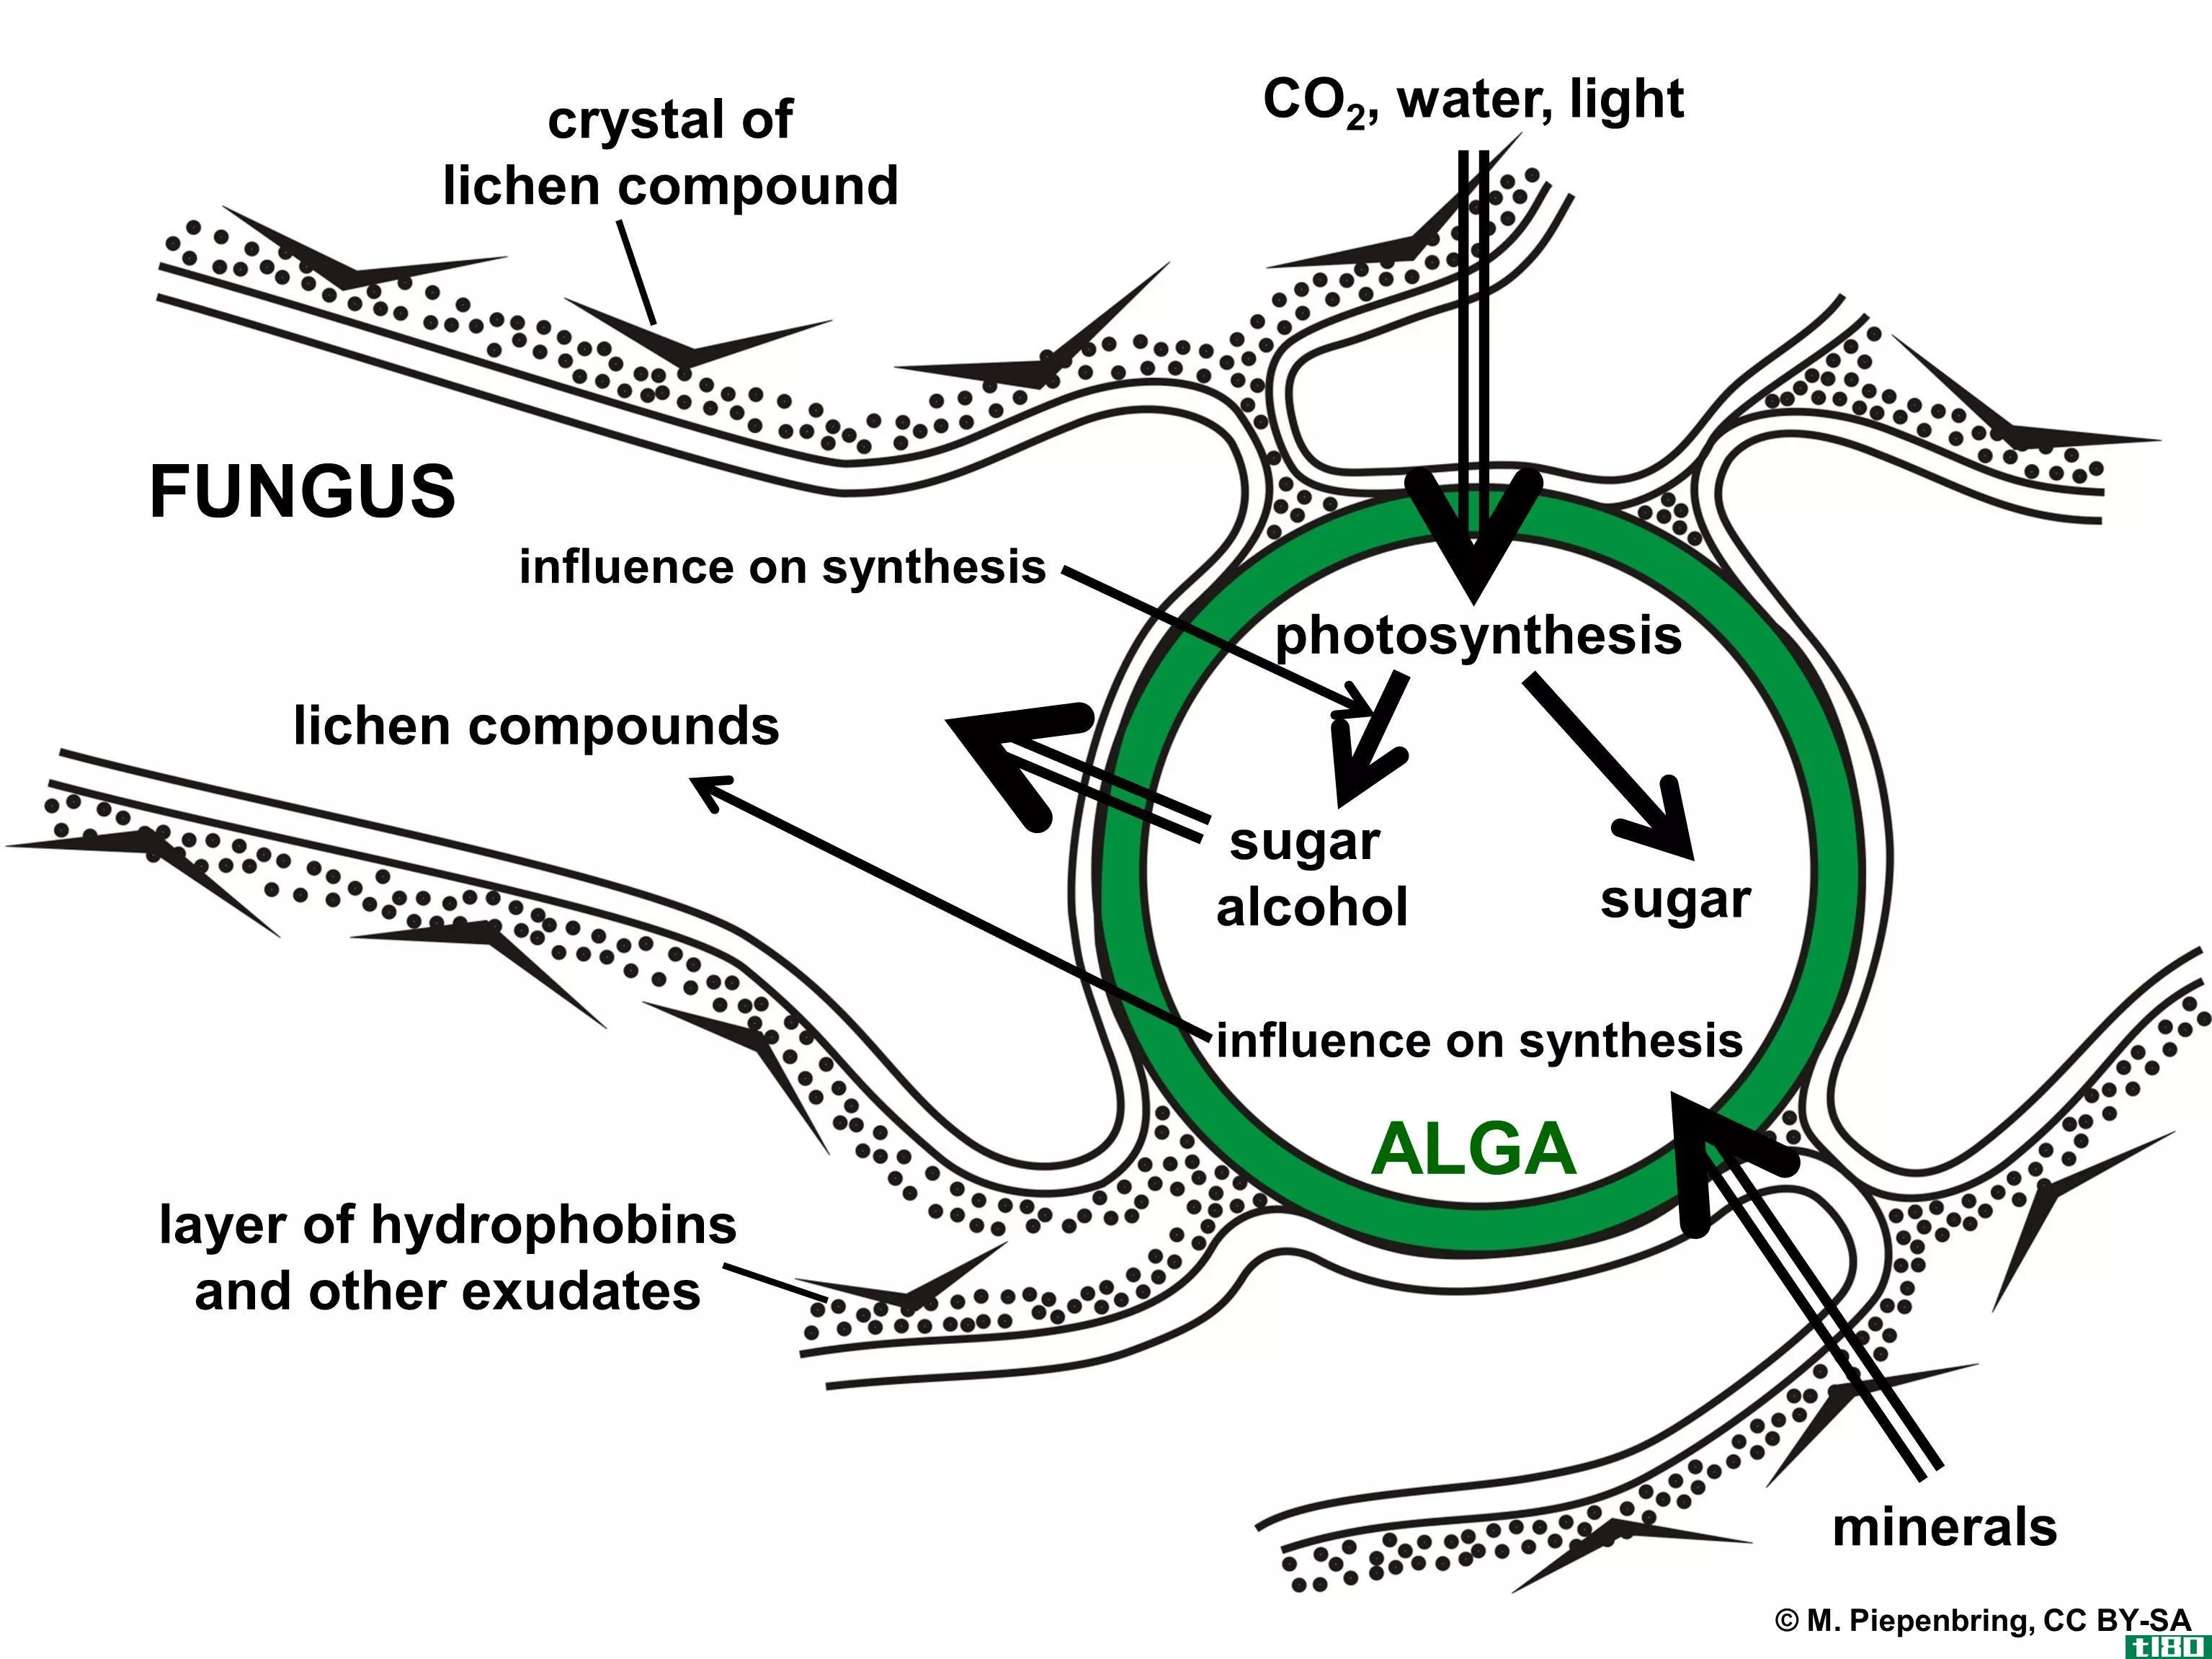 光生物(photobiont)和微生物(mycobiont)的区别